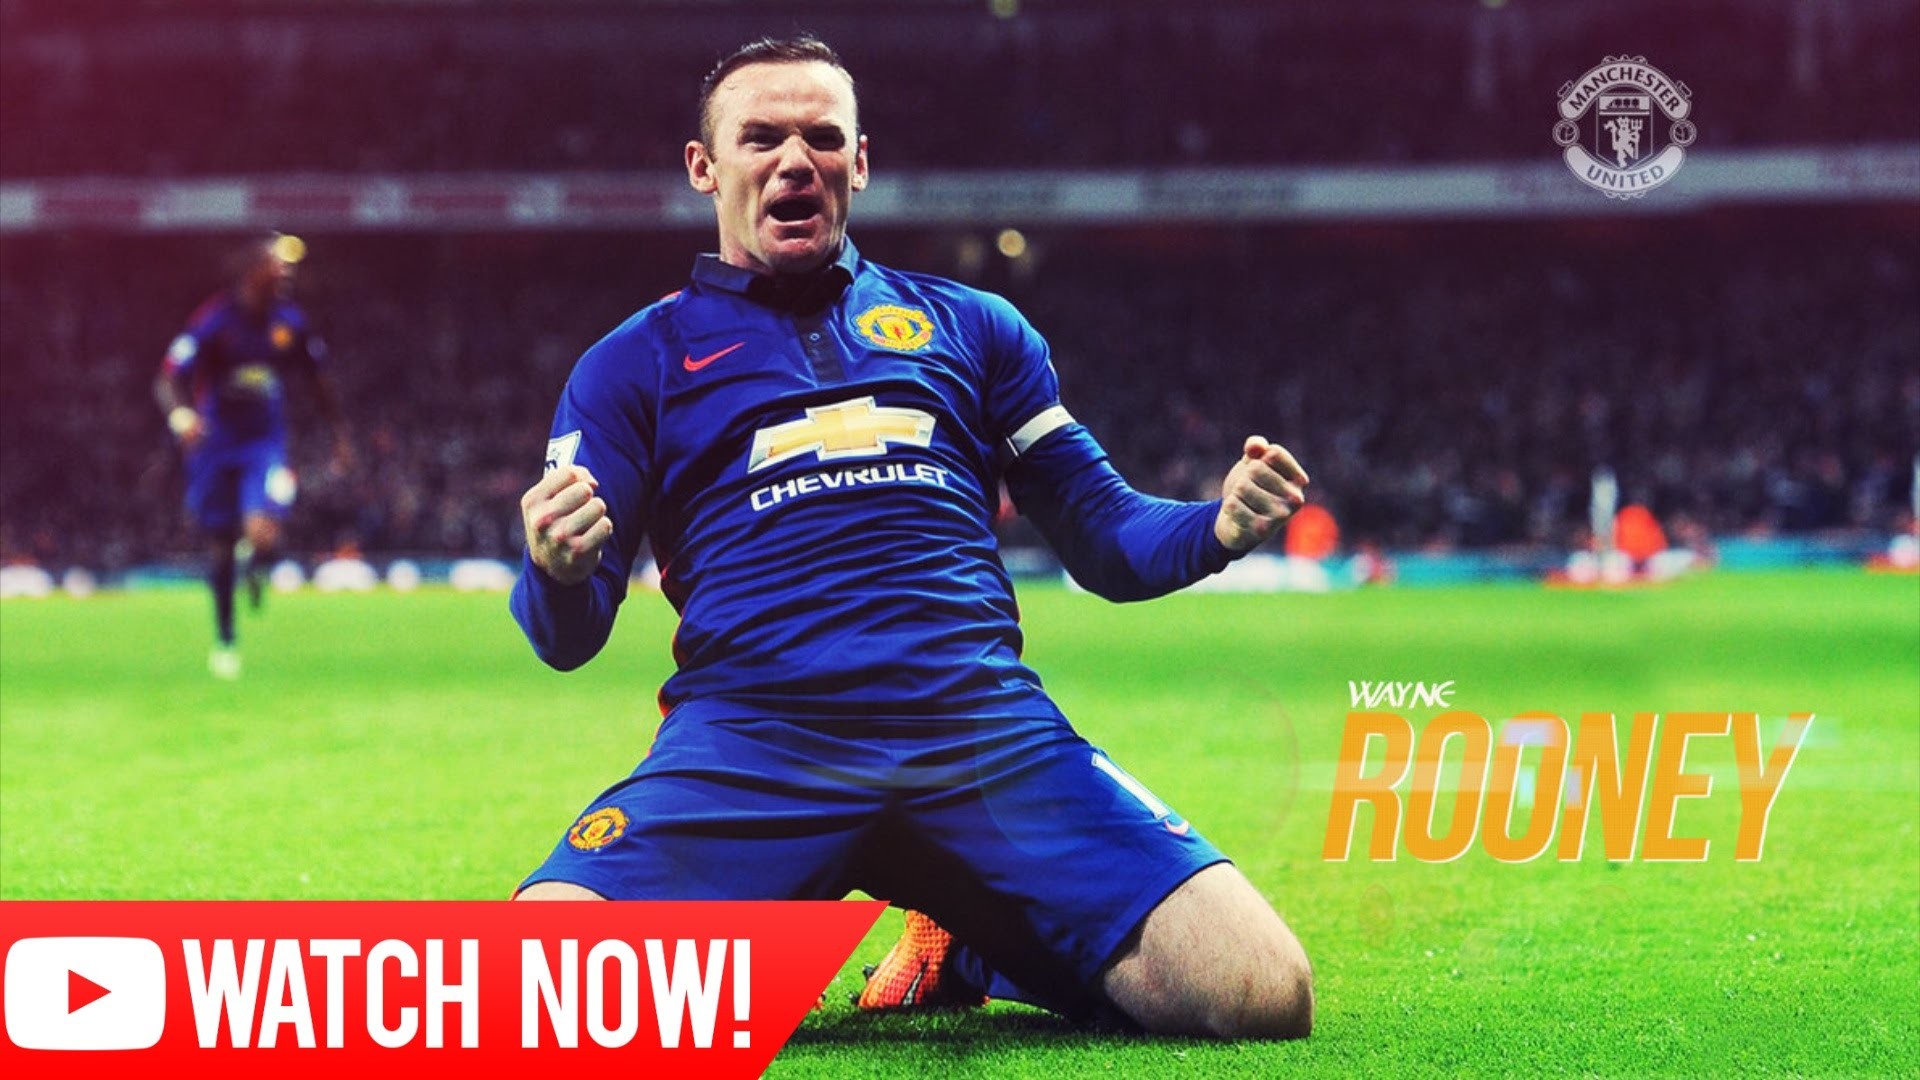 1920x1080 Wayne Rooney - Captain Fantastic - Amazing Goals, Skills, Passes, Tackles -  2015 - HD